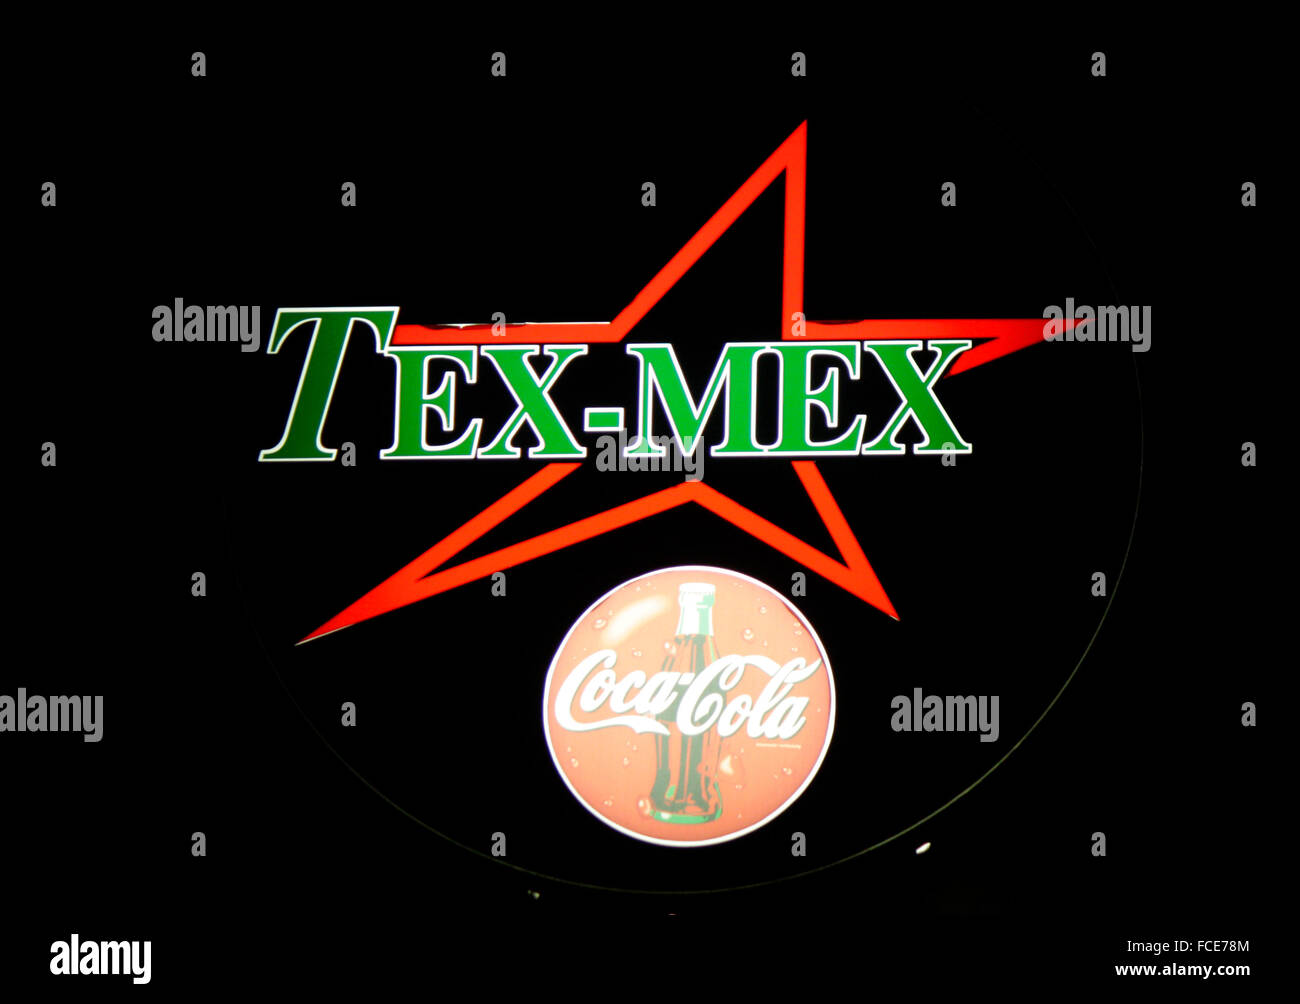 Markenname: "Tex Mex" , "Coca Cola", Berlin. Stock Photo